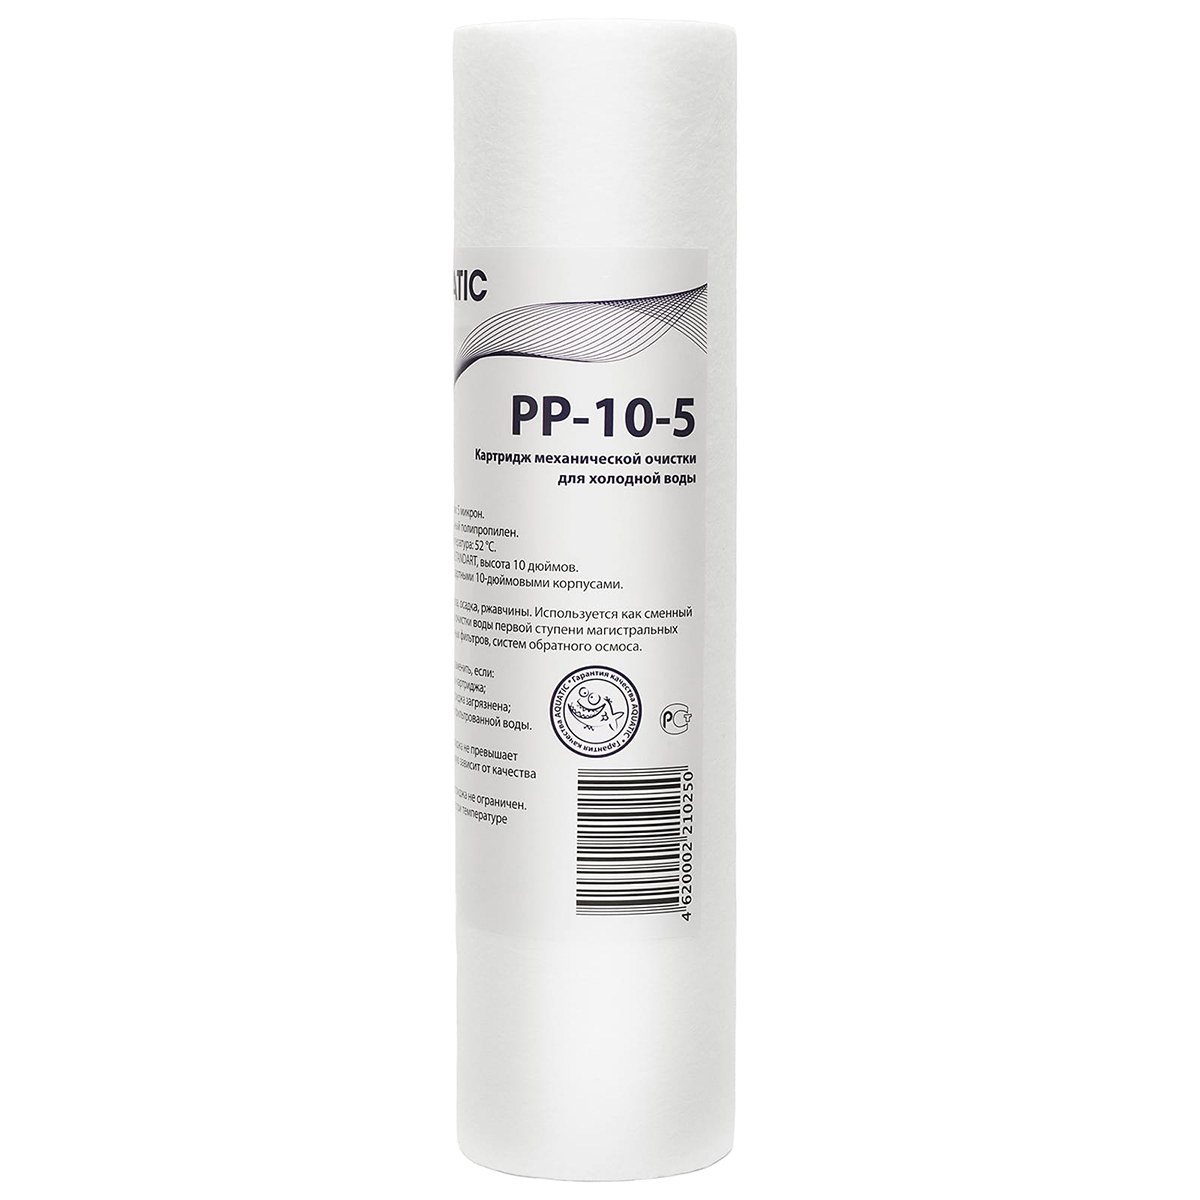 Картридж фильтра Aquatic PP-10-5 для холодной воды полипропиленовый 5 мкм 10SL